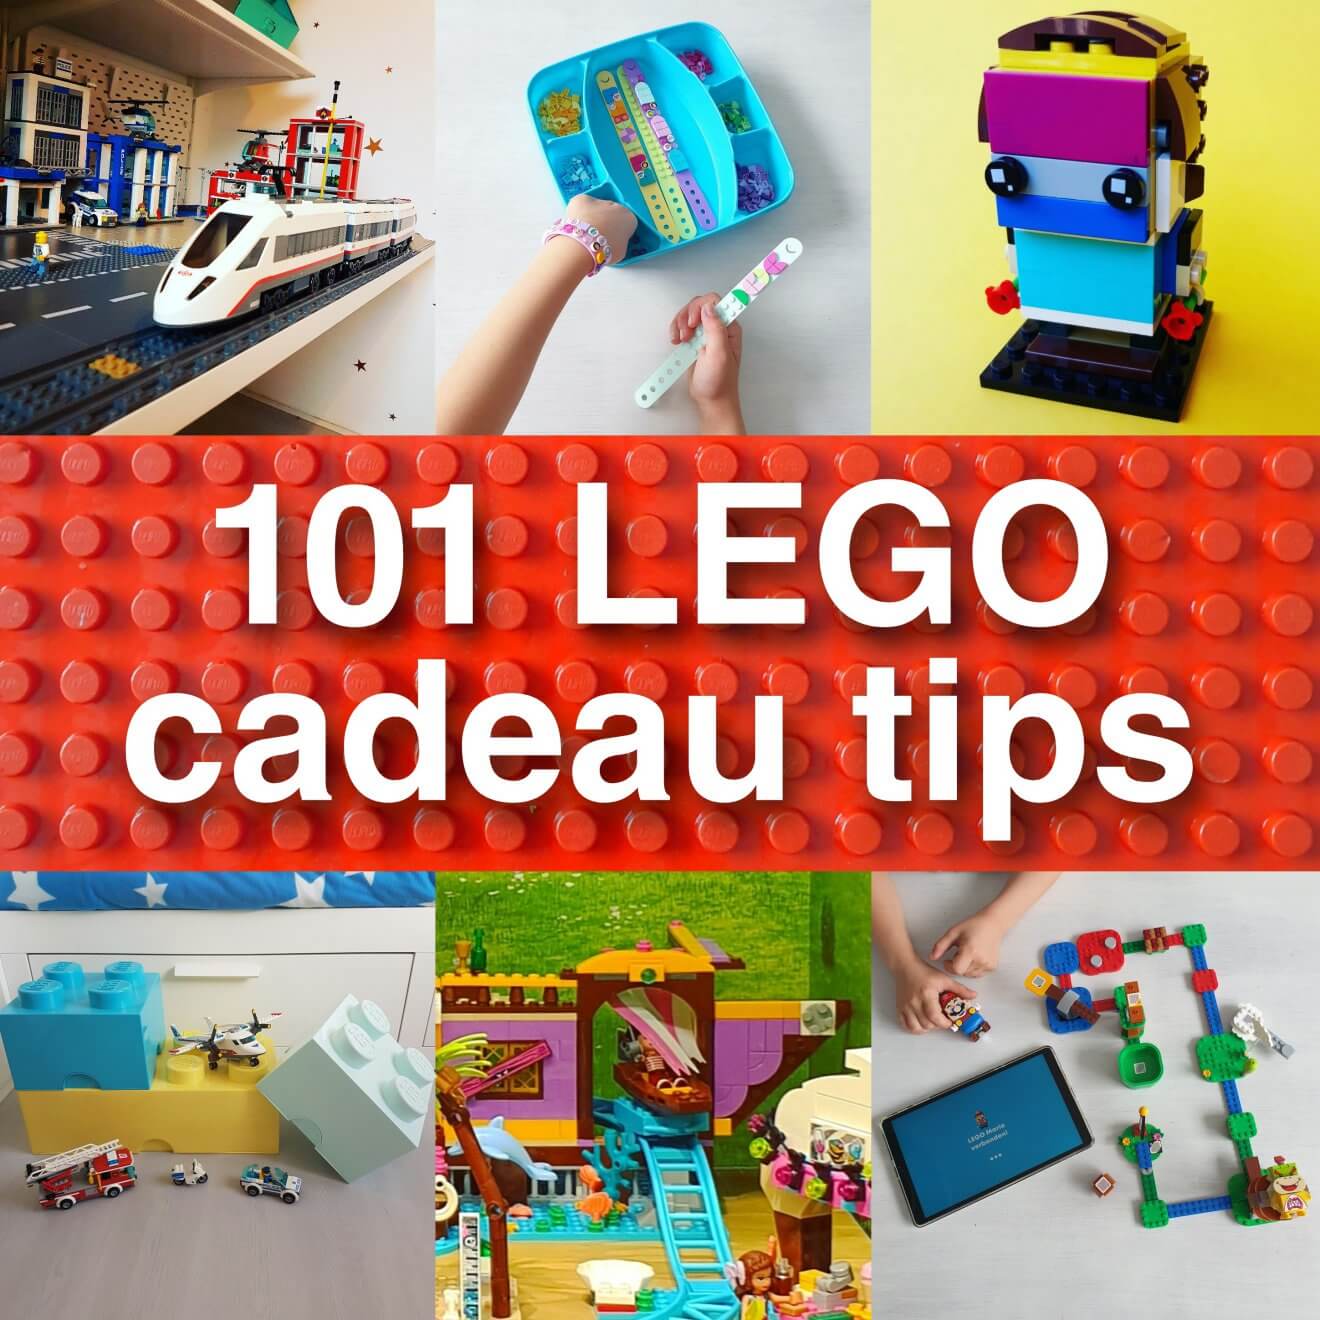 LEGO cadeau ideeën: onze tips voor kinderen van alle leeftijden